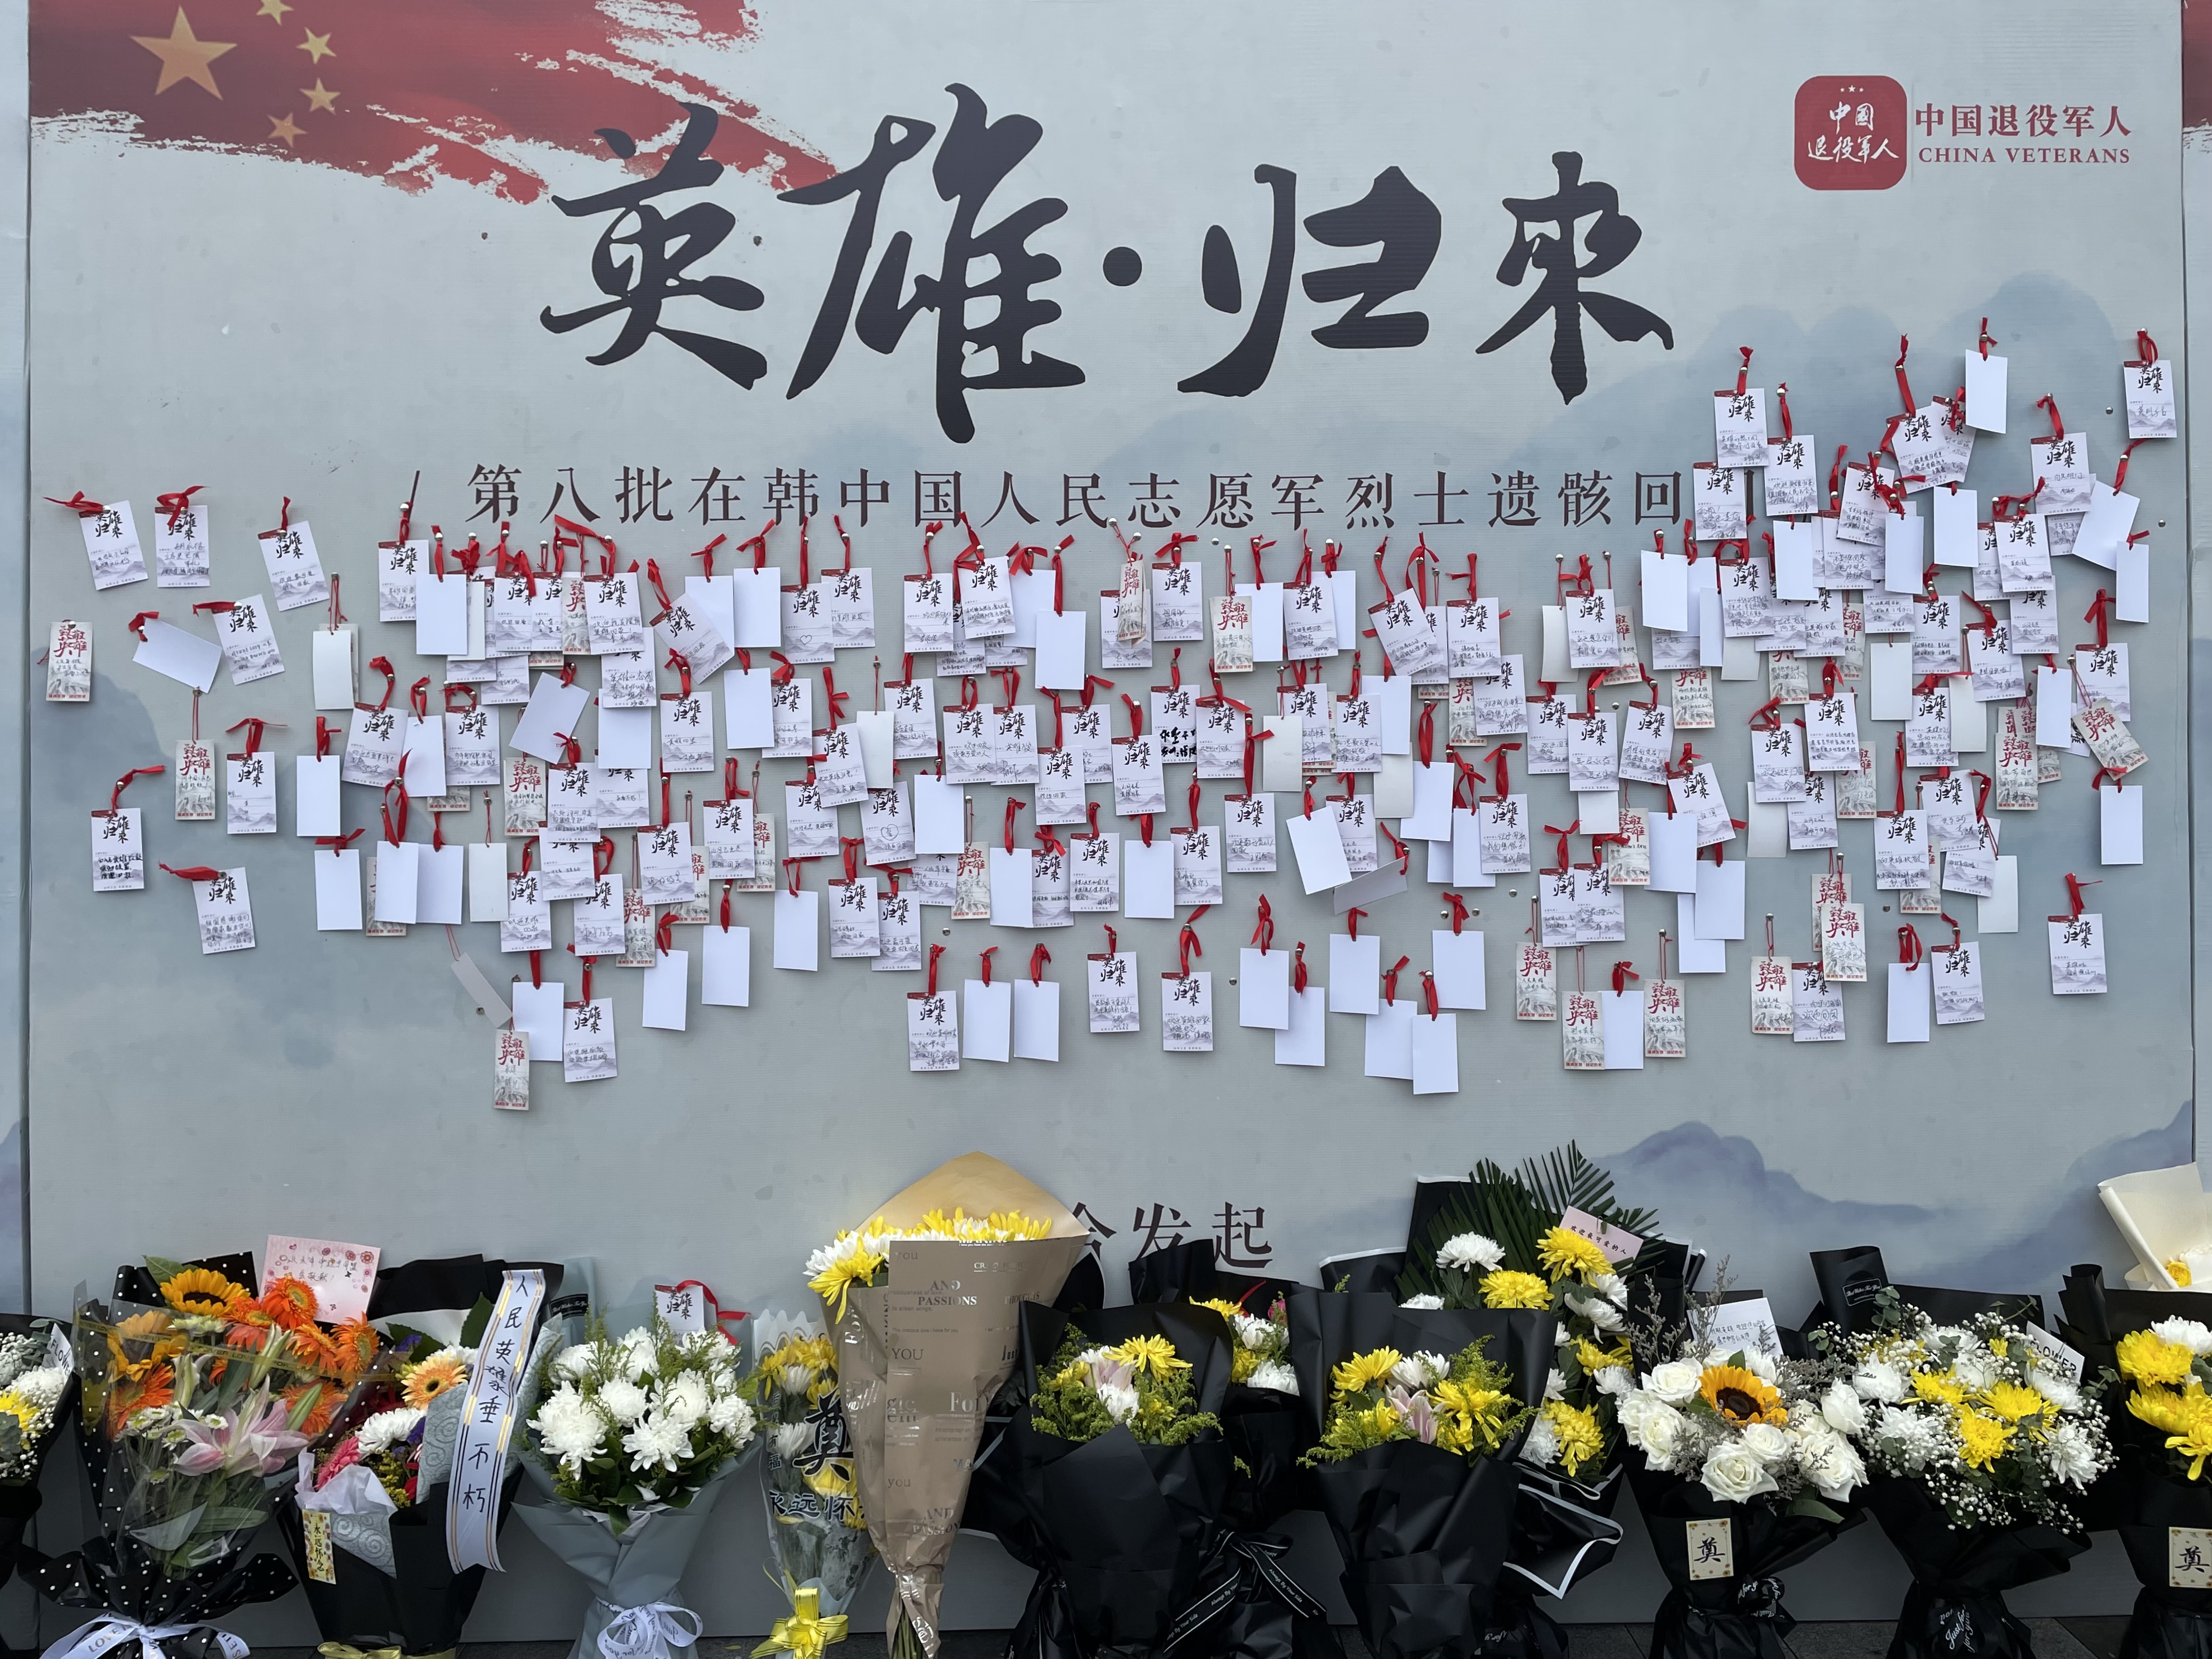 9月3日,沈阳抗美援朝烈士陵园门口,市民通过献花和留言的方式悼念英雄